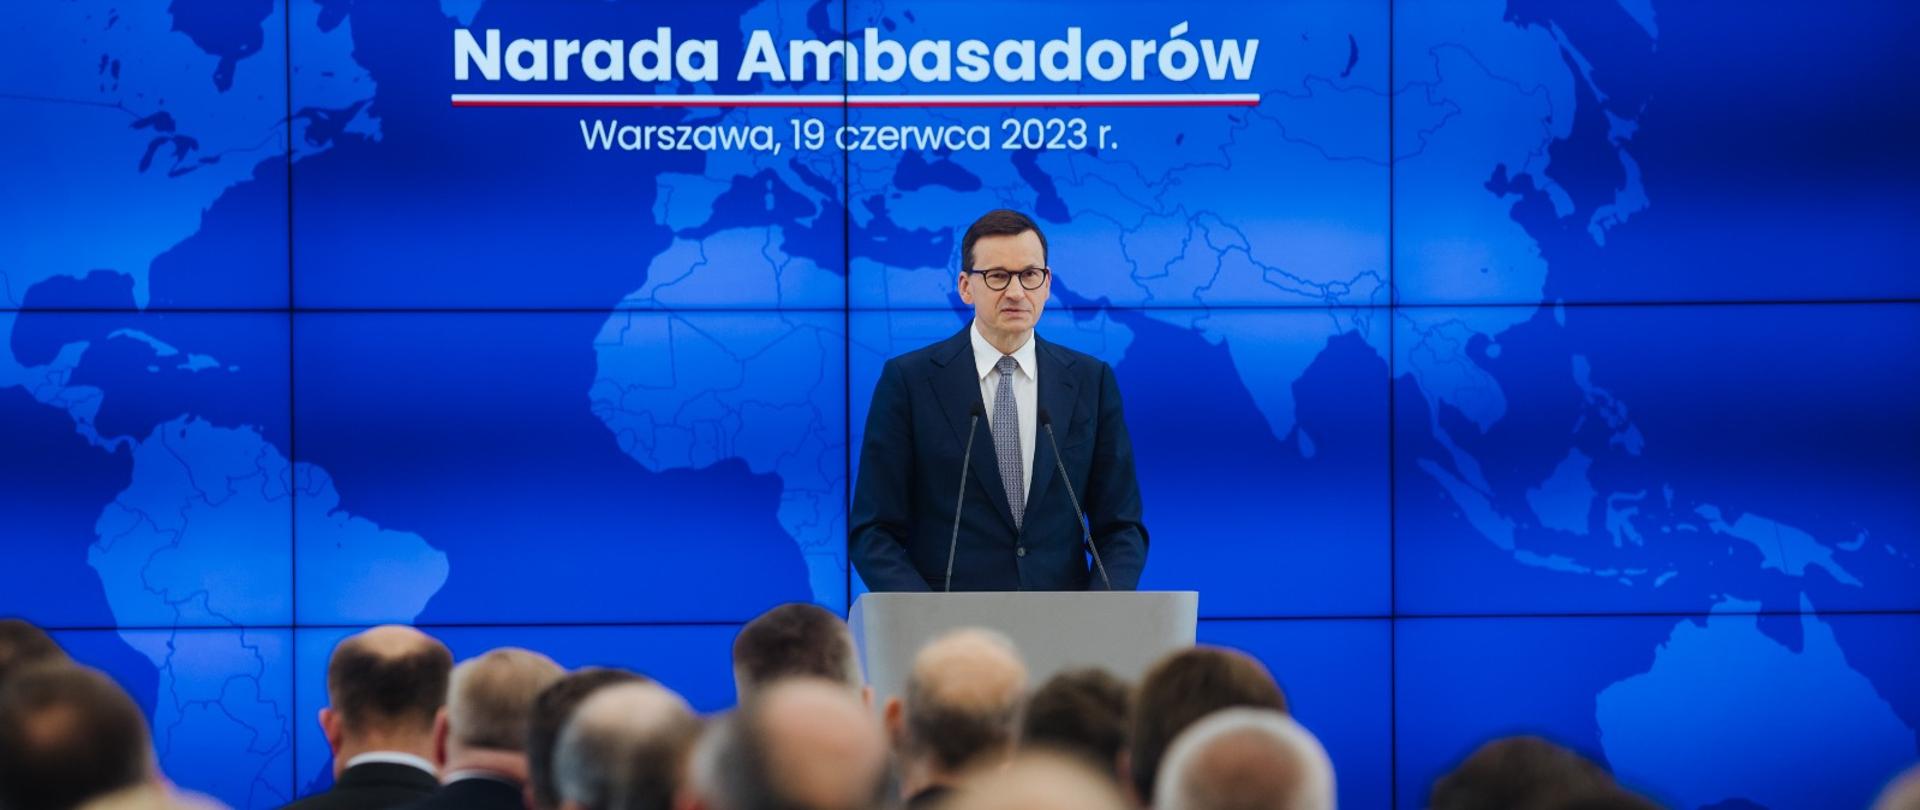 Premier Mateusz Morawiecki przemawia podczas udziału w Naradzie Ambasadorów.